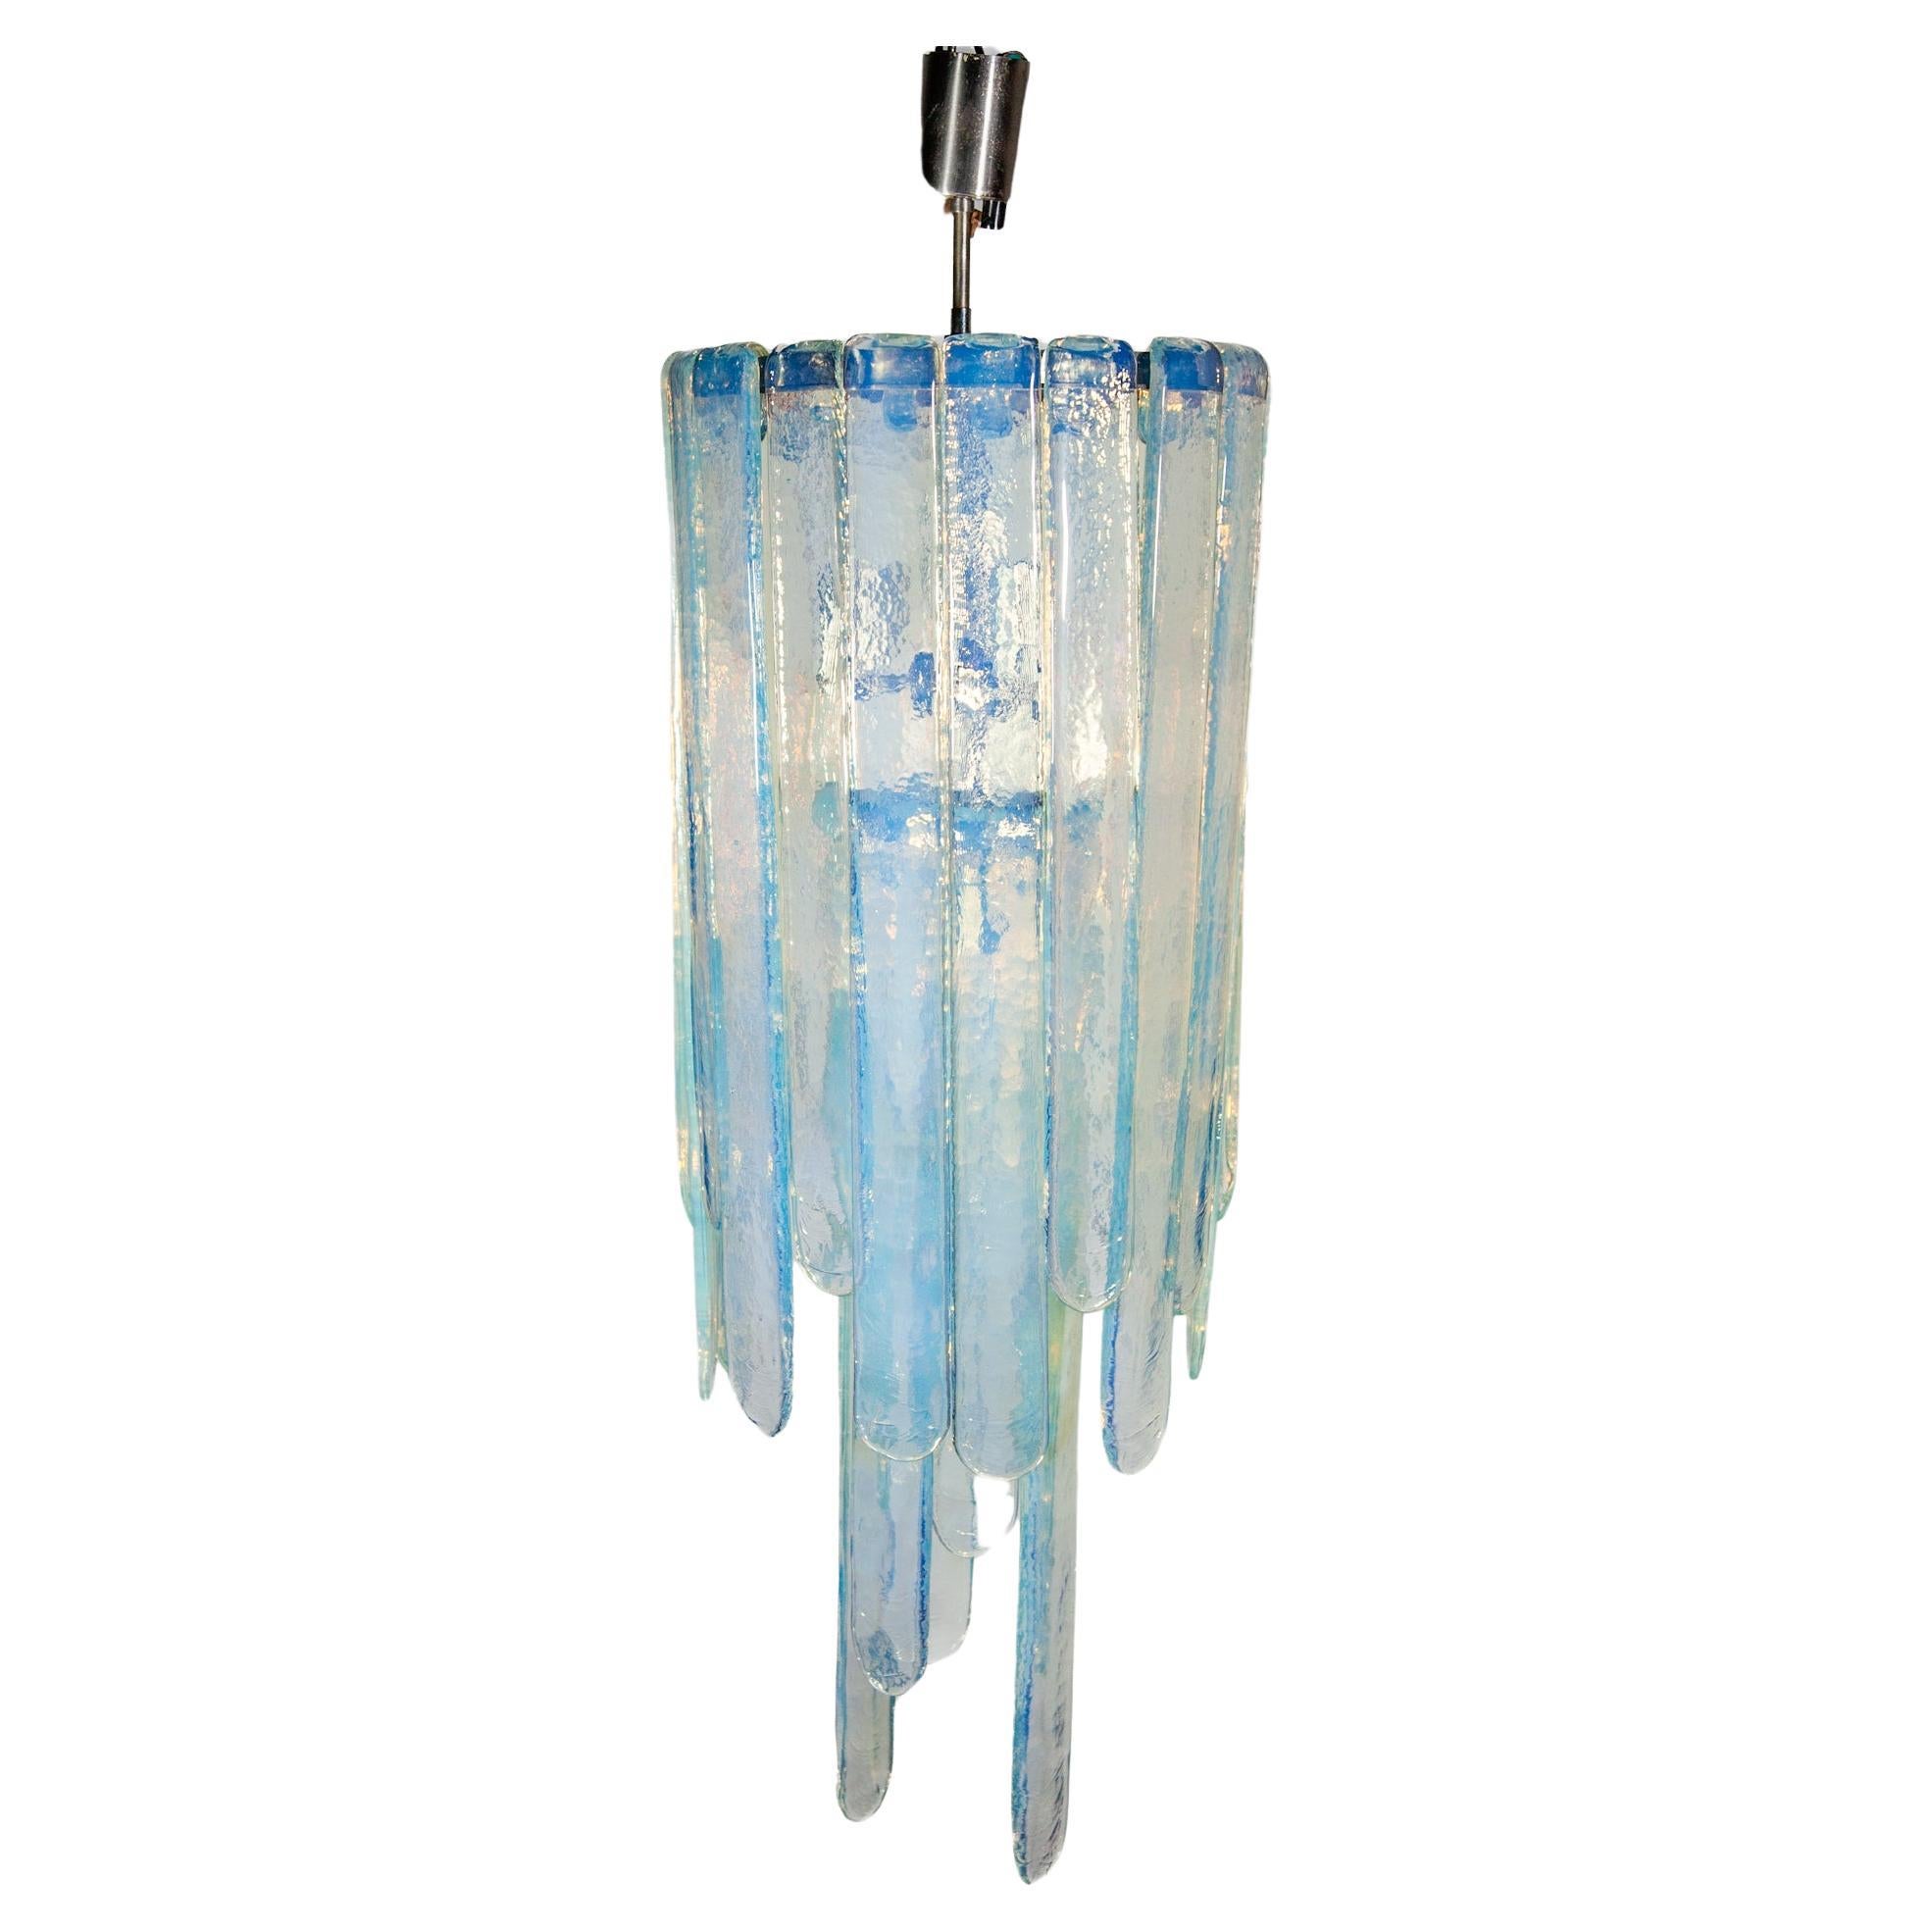 Moderner Vintage-Kronleuchter aus opalisierendem Glas, entworfen von Carlo Nason für Mazzega, Italien, 1960er Jahre, aus blauem opalisierendem Kunstglas, bestehend aus drei Glasflügeln. In seiner jetzigen Zusammensetzung ist er 98 cm hoch, kann aber